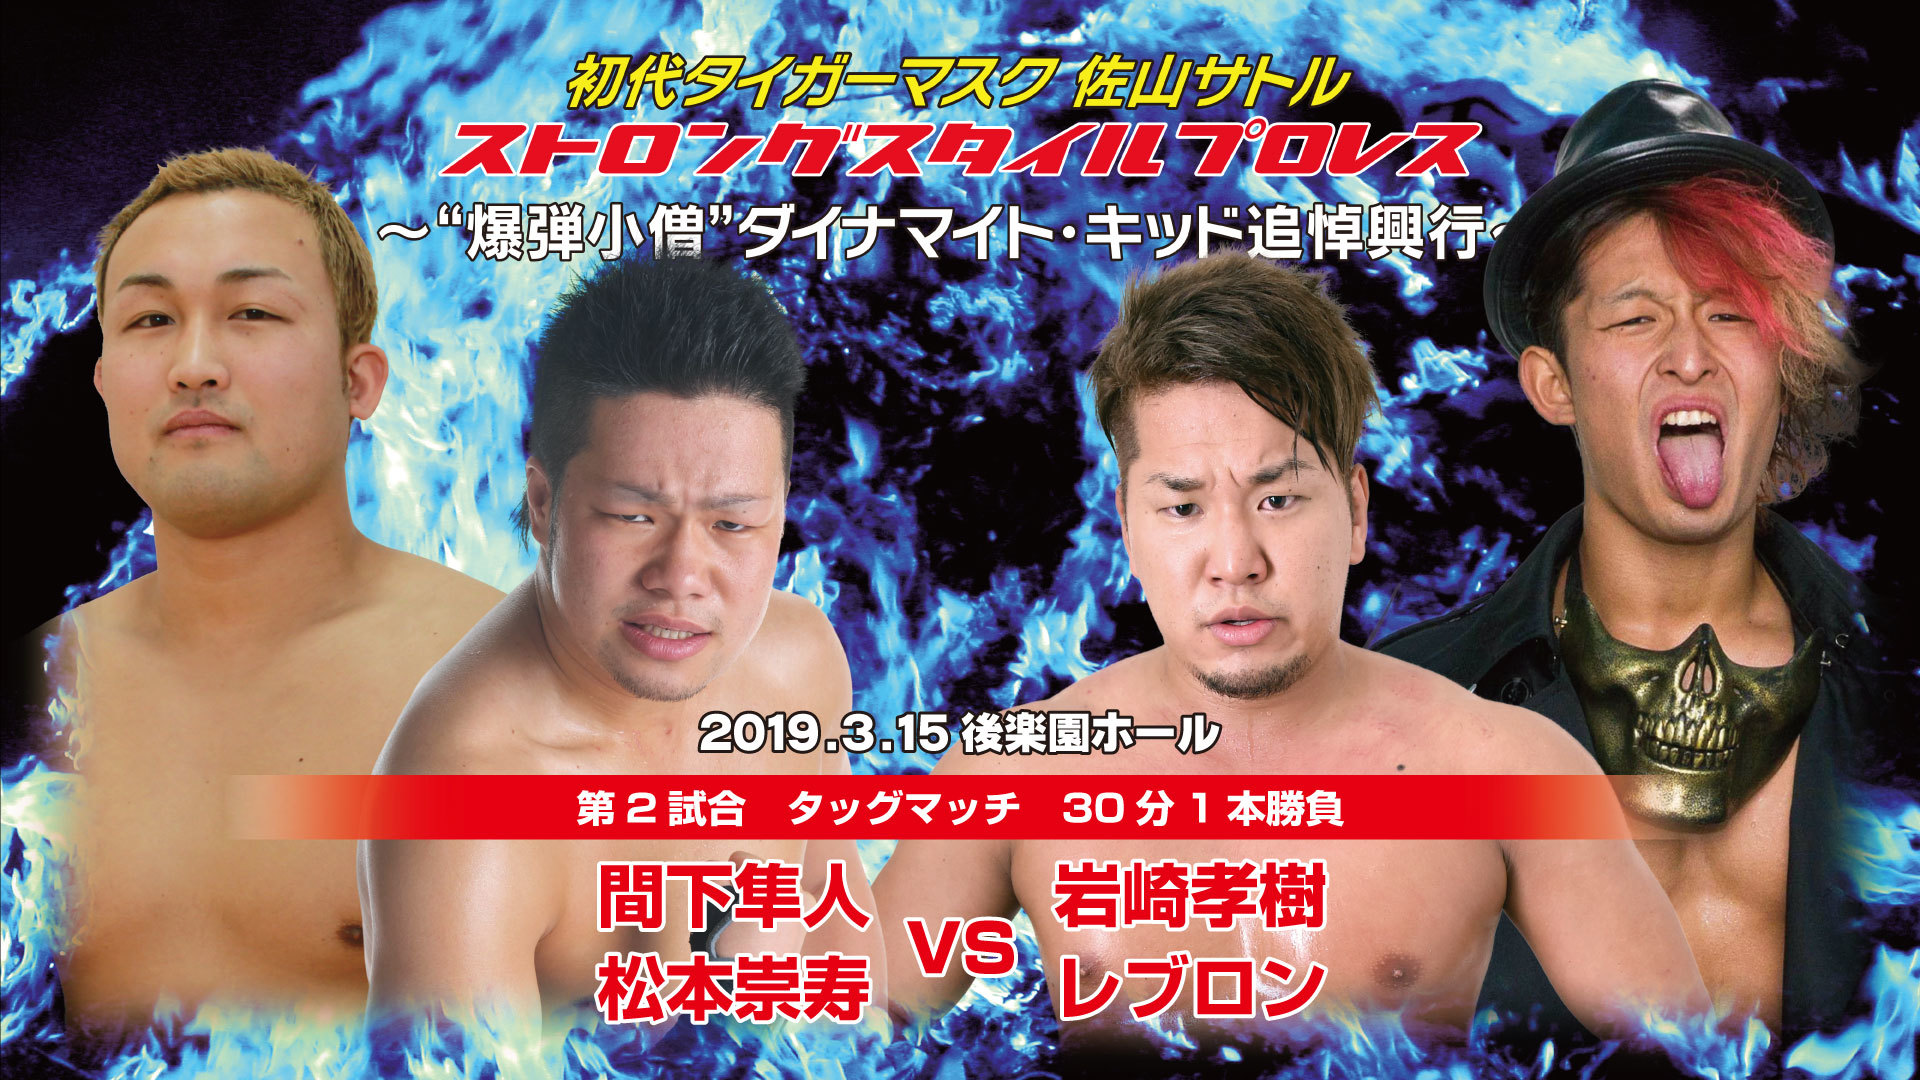 第2試合は若手の注目株同士である岩崎孝樹と松本崇寿がタッグマッチで対戦